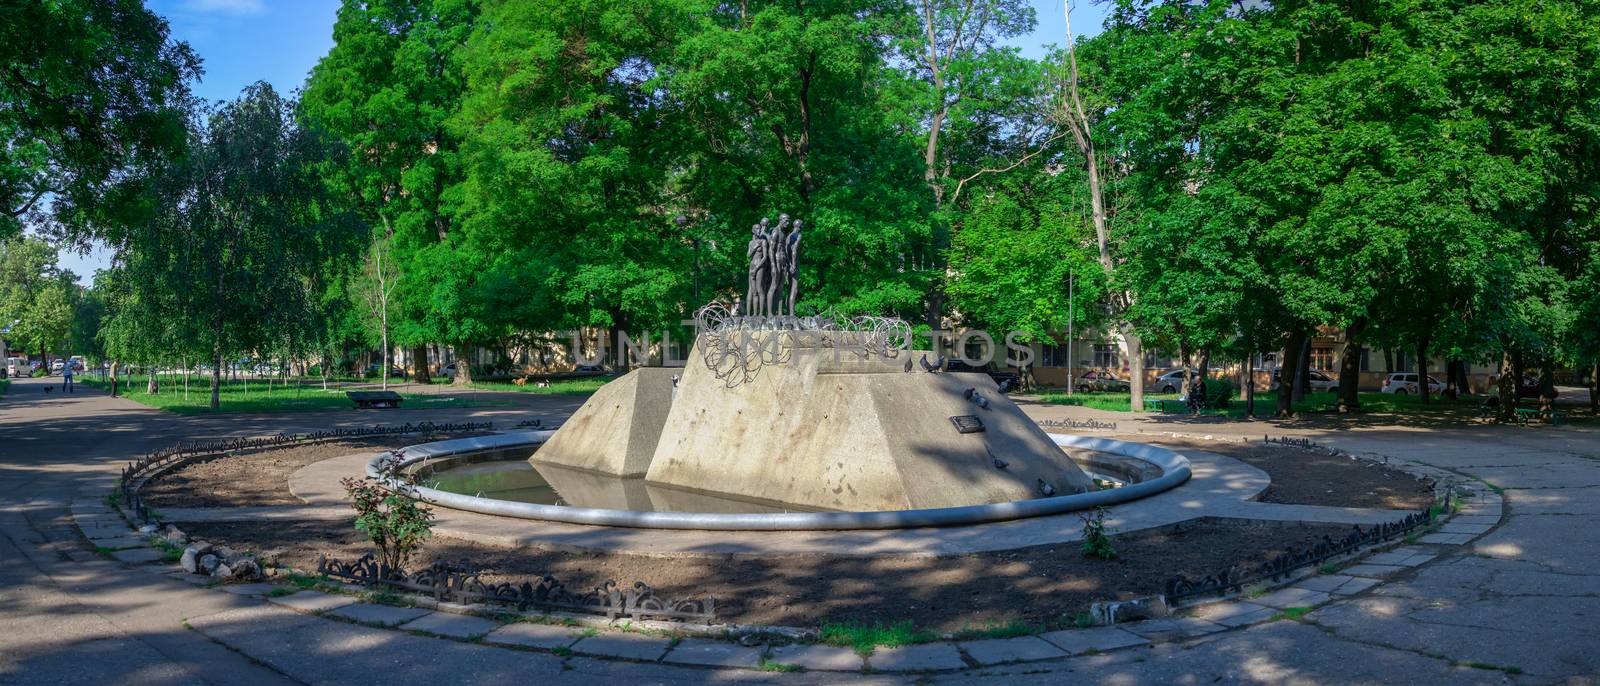 Holocaust Monument in Odessa, Ukraine by Multipedia